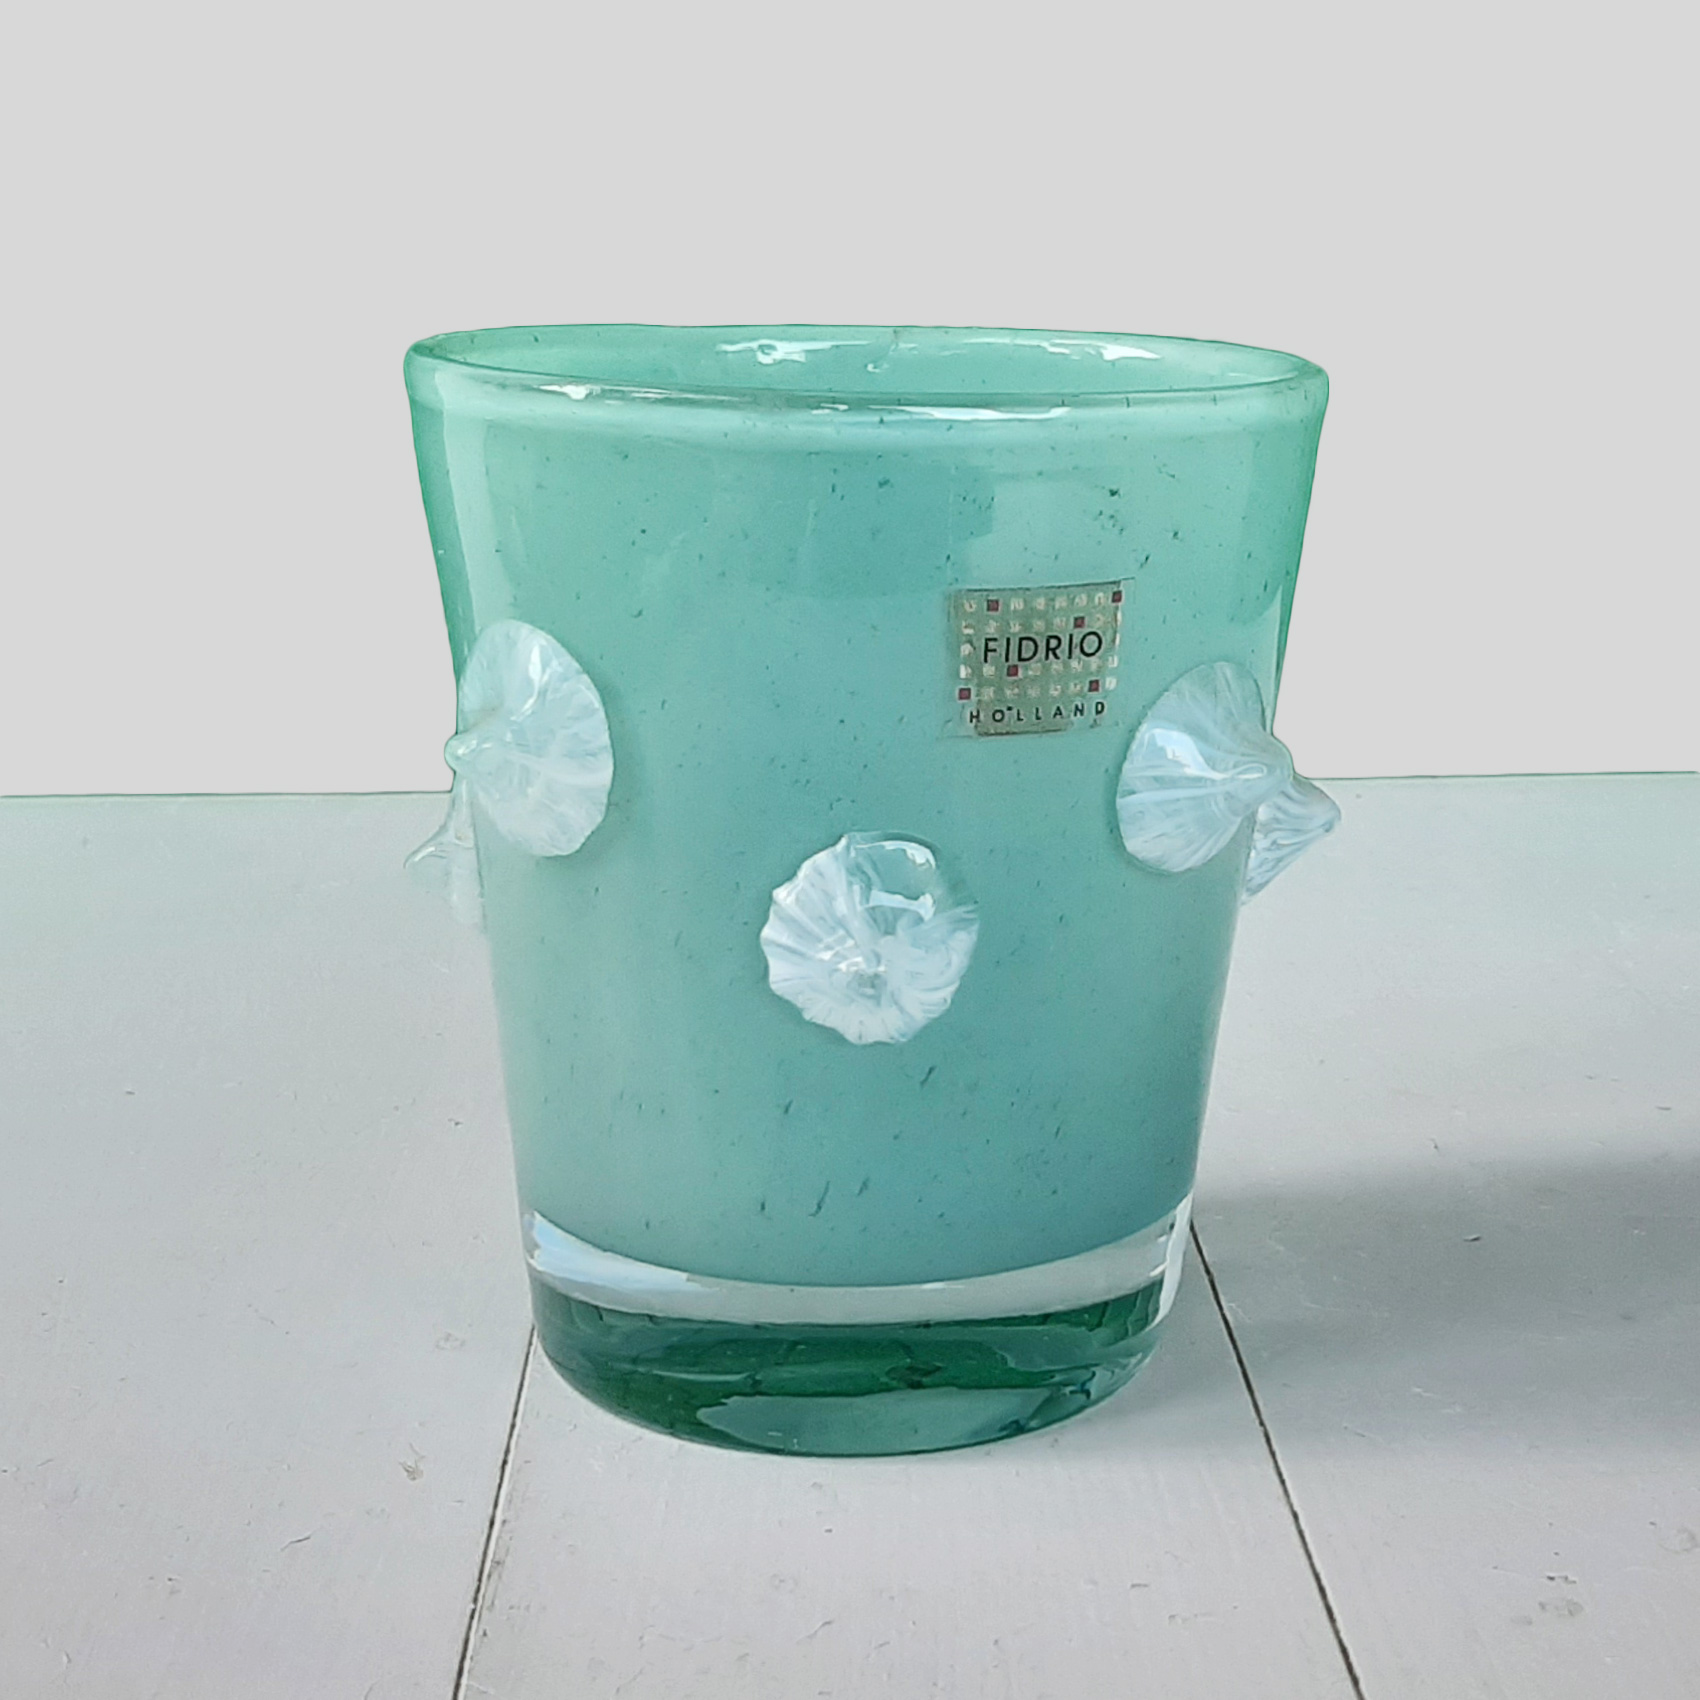 Vasetto in vetro design Fidrio - h 13,5 cm